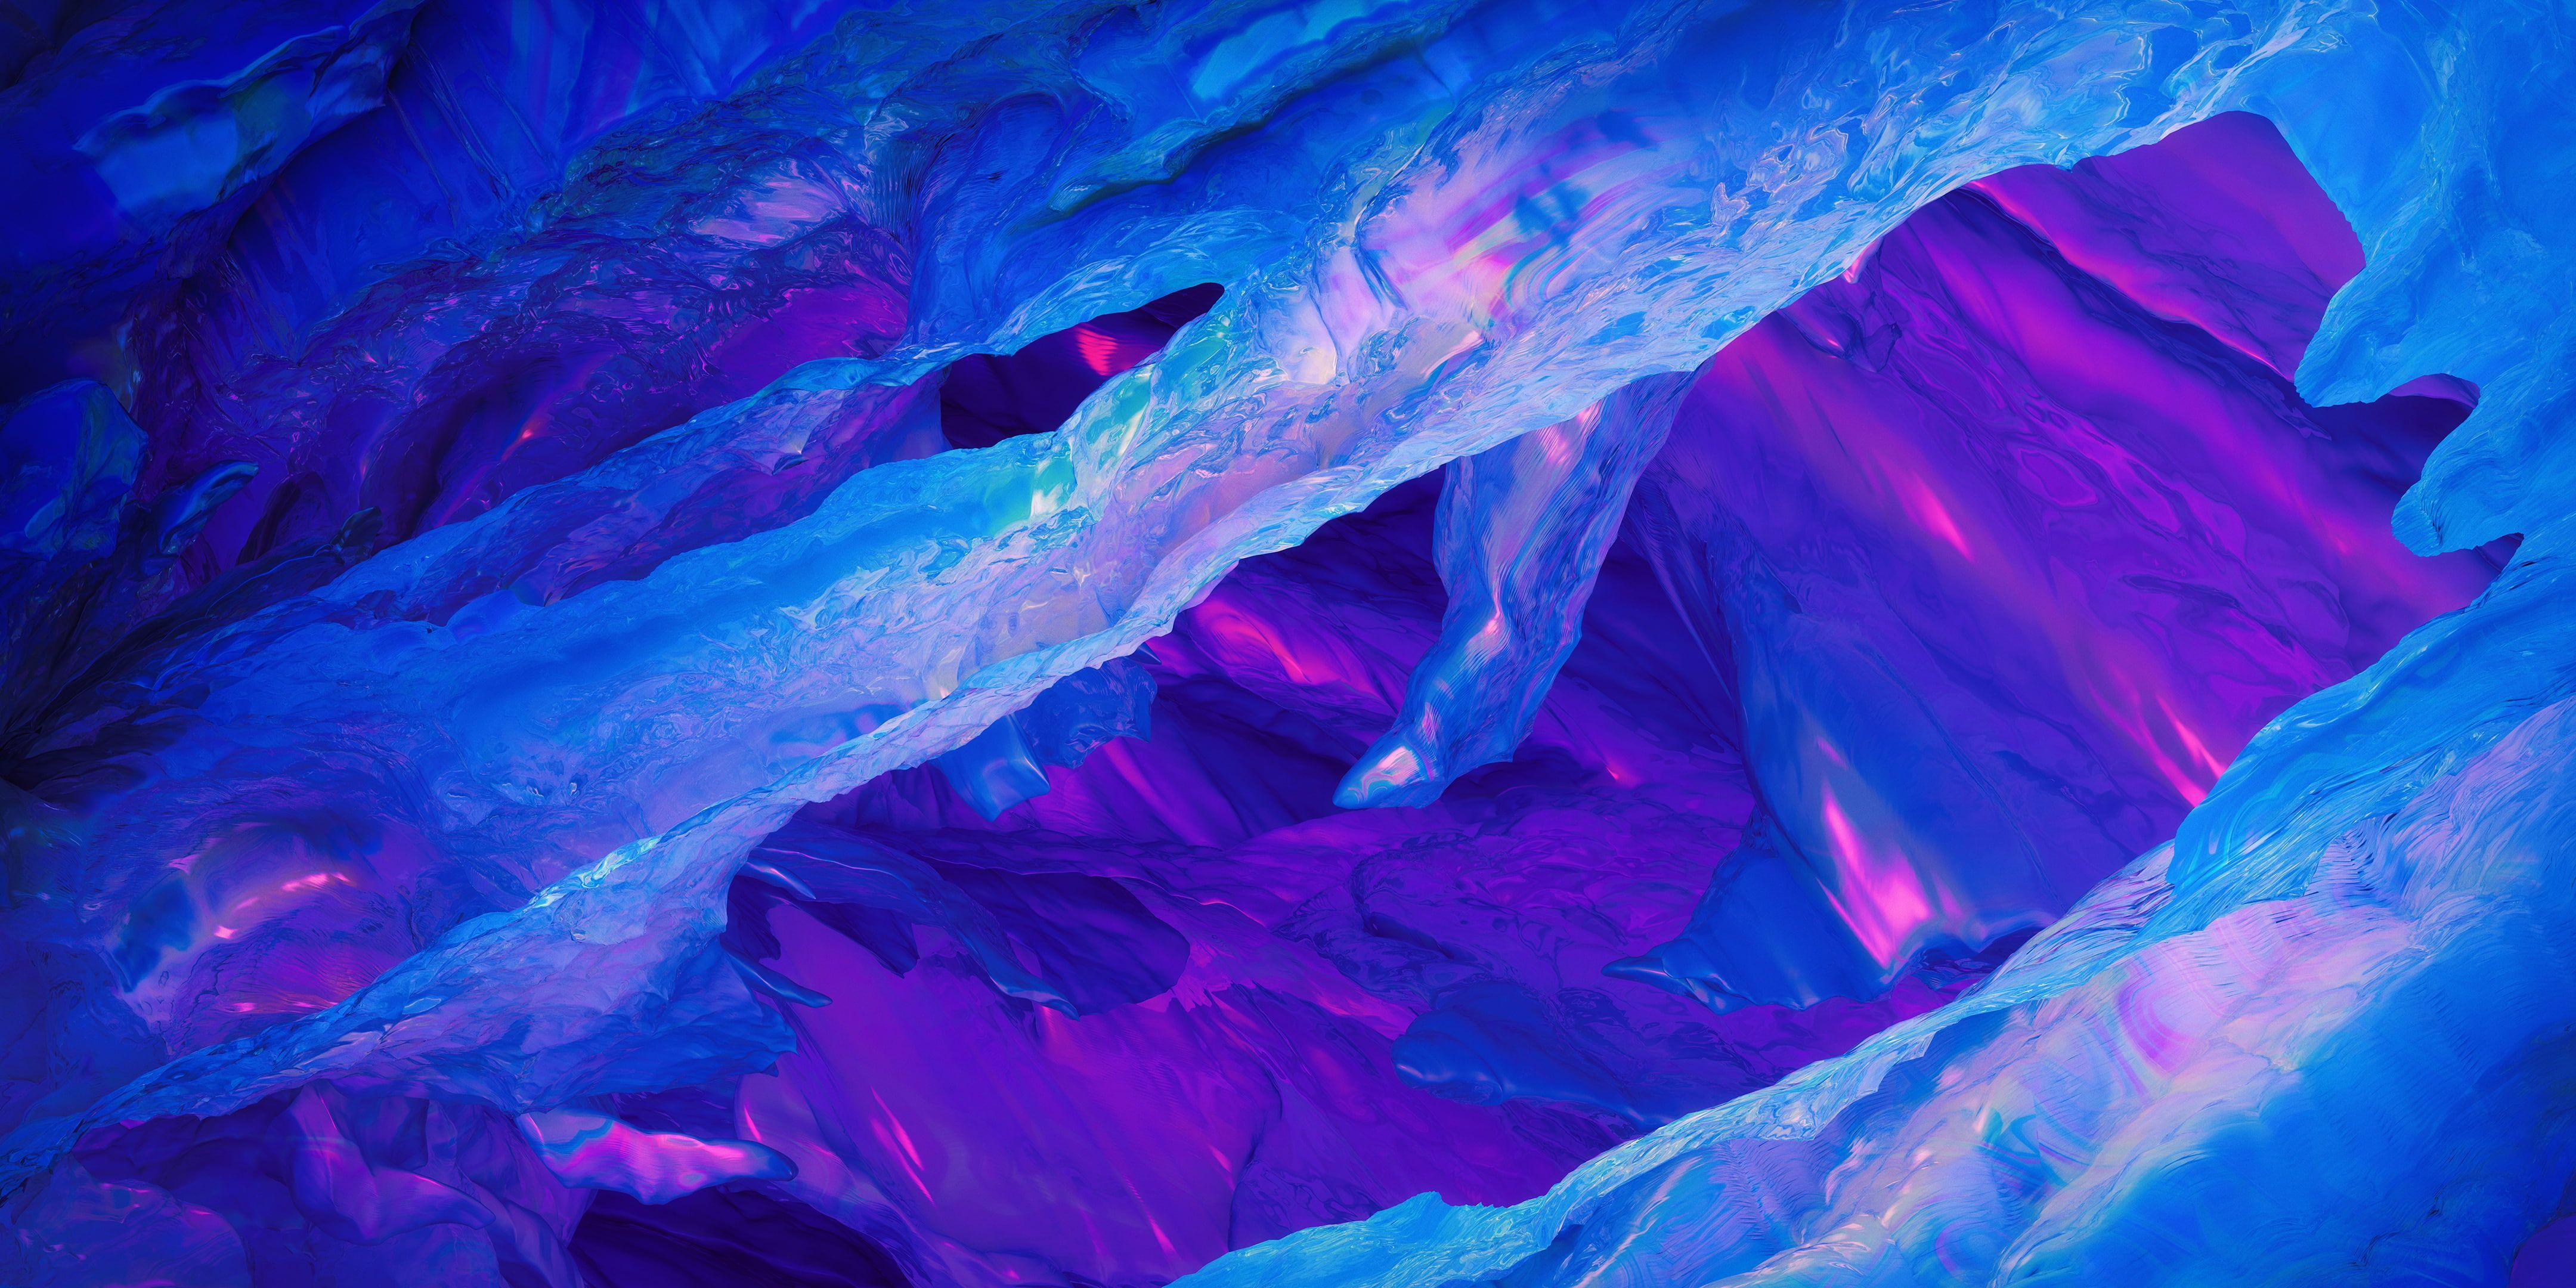 Blue OnePlus 5T #Stock #Ice #Purple #Neon K #Frost K #wallpaper #hdwallpaper #desktop. Blue background wallpaper, Digital wallpaper, Blue wallpaper